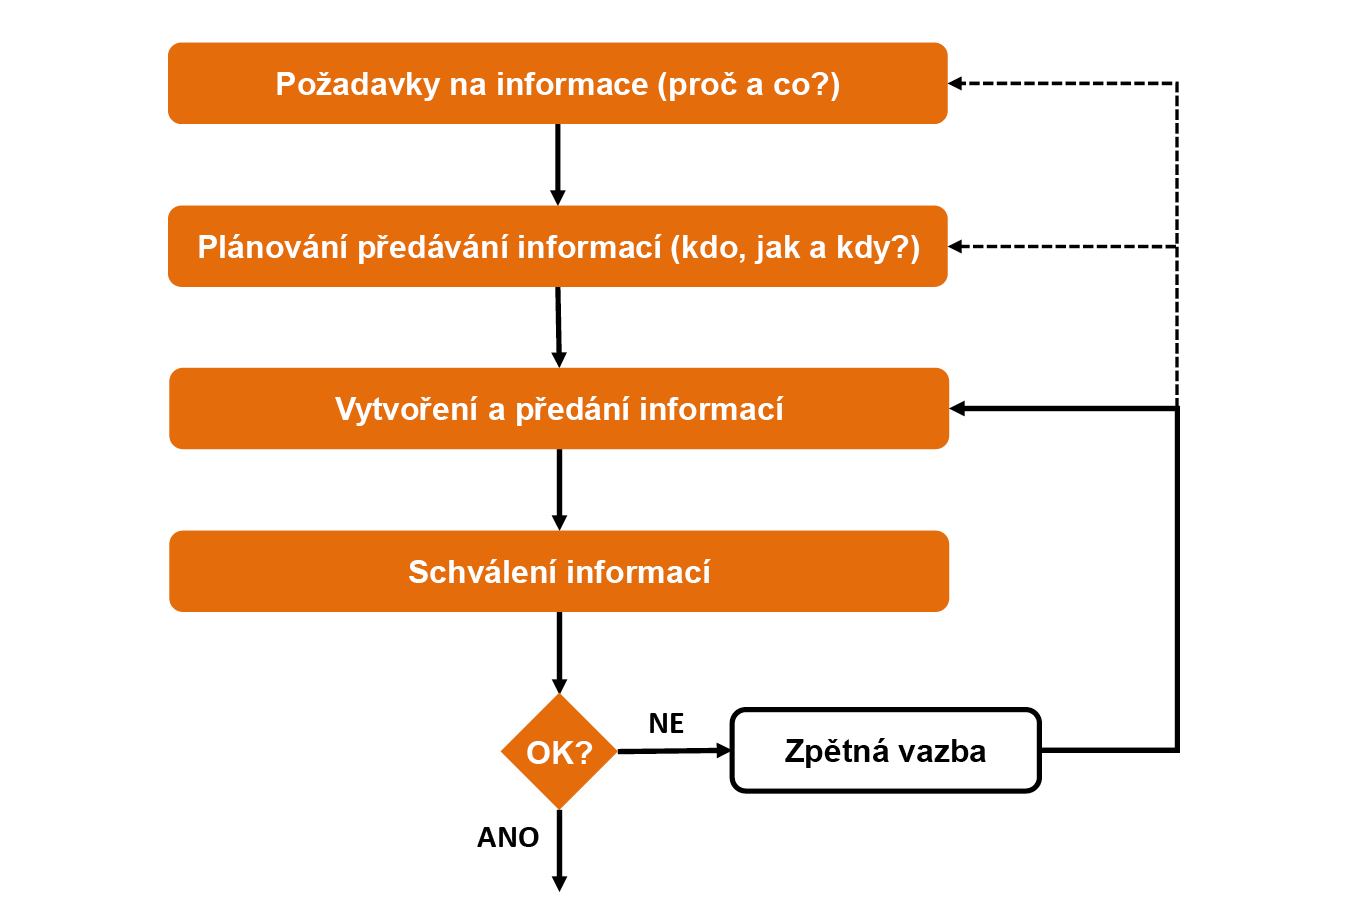 Cyklus předávání informací podle ČSN EN ISO 19650-1 sestává ze čtyř základních kroků.